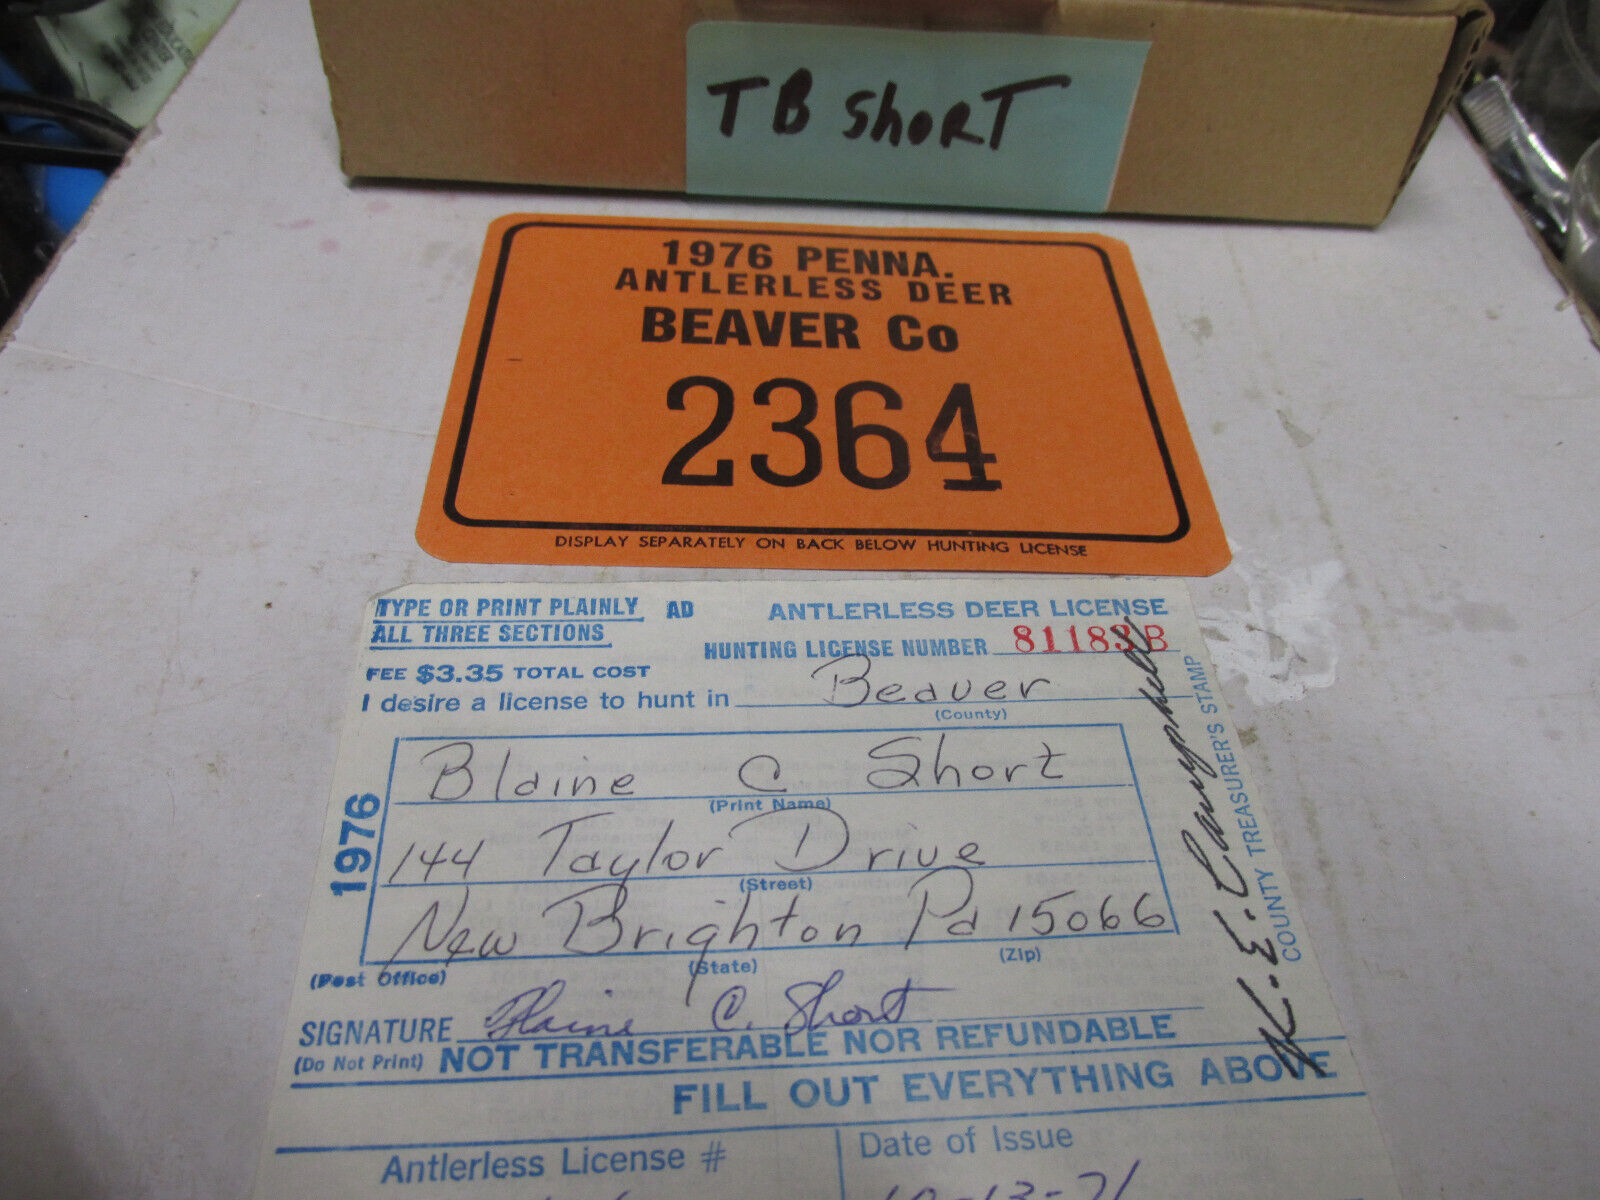 [TBshort] 1976 Pa resident Beaver county, antlerless hunting license,